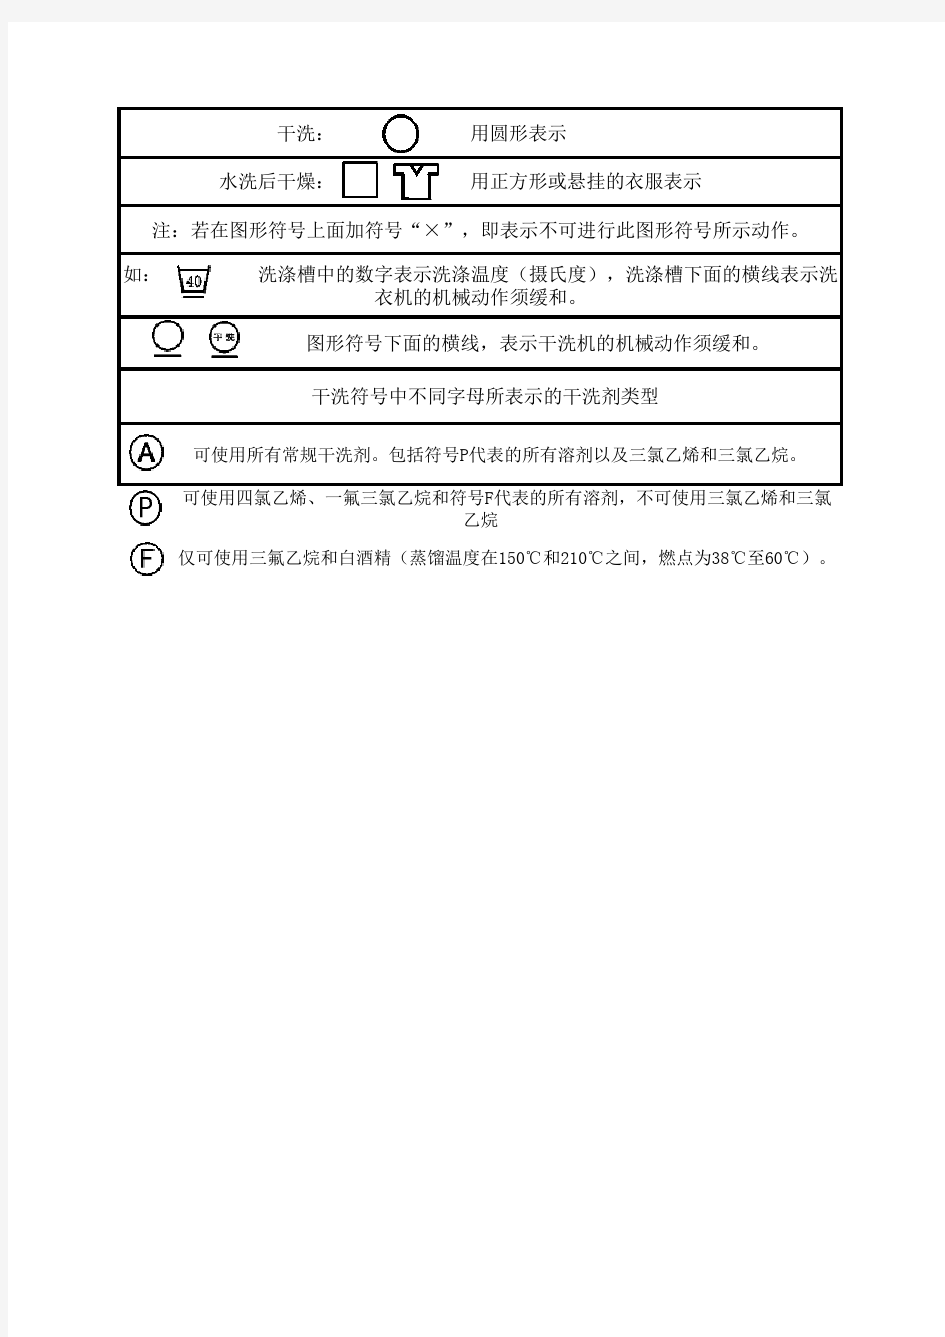 服装洗涤国际标志中文对照表